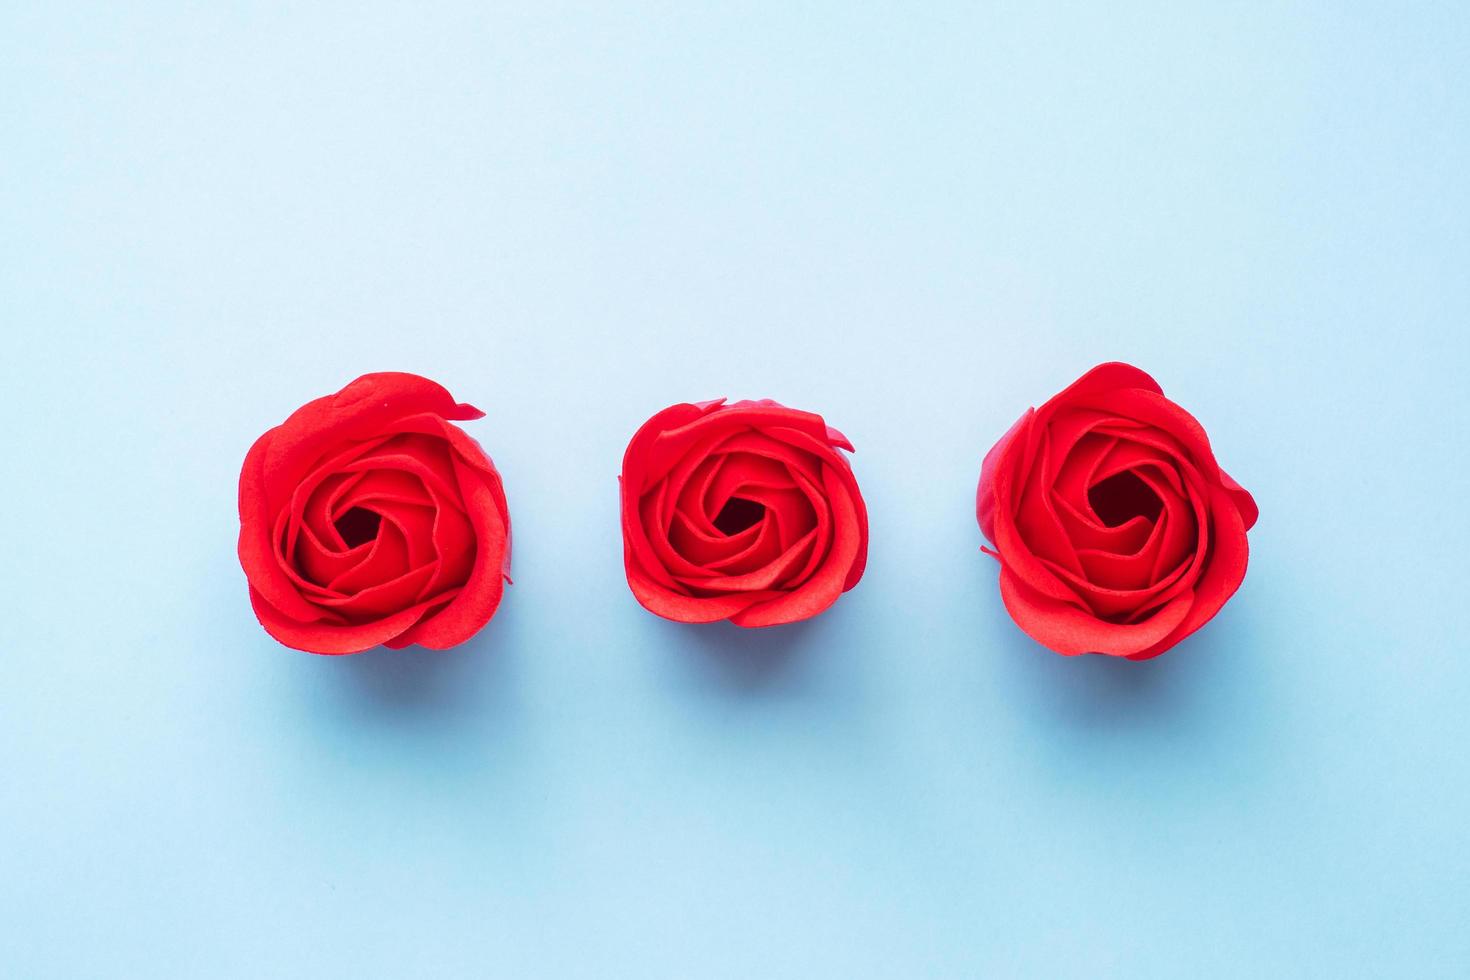 Handgemachte Seife in Form einer Rose, rote Rosenblüte auf blauem Hintergrund. draufsicht, minimalistisch, kopierraum. foto